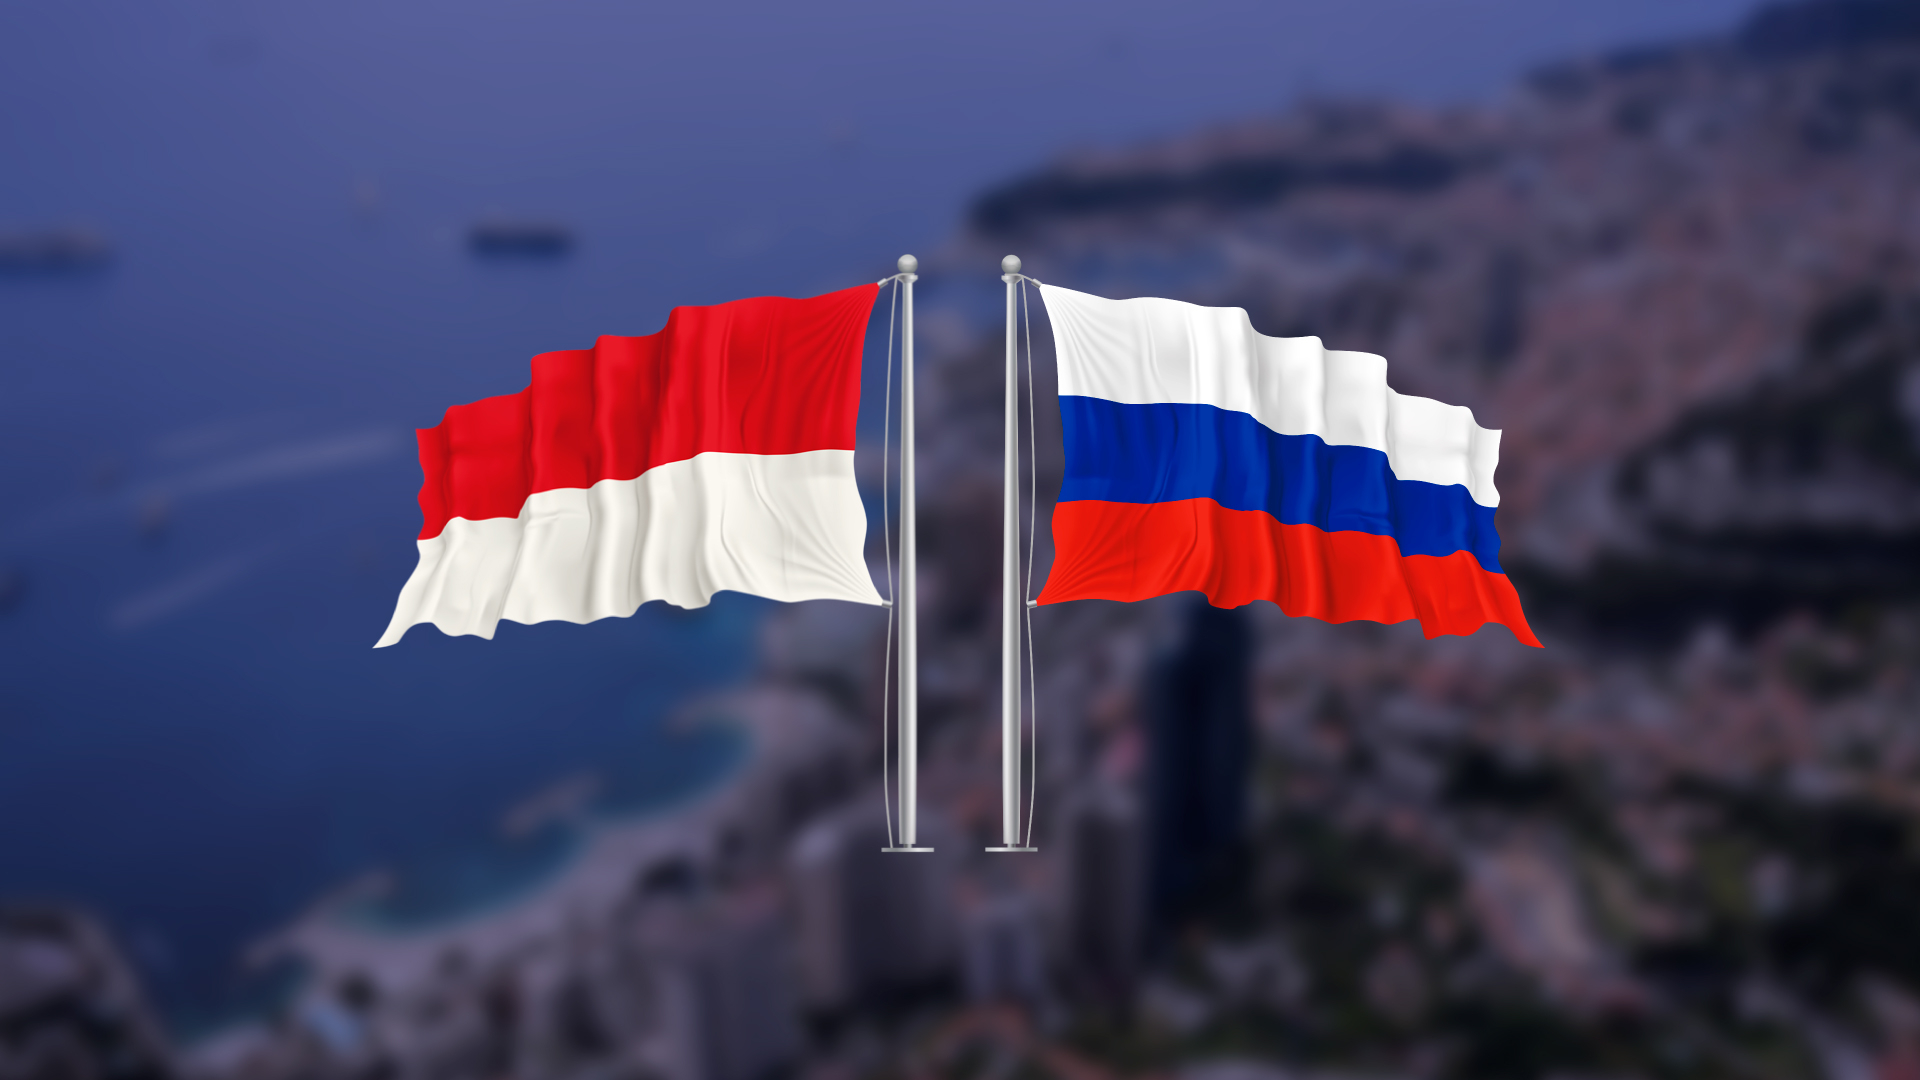 Монако и Россия: 15 лет доверия и дружбы